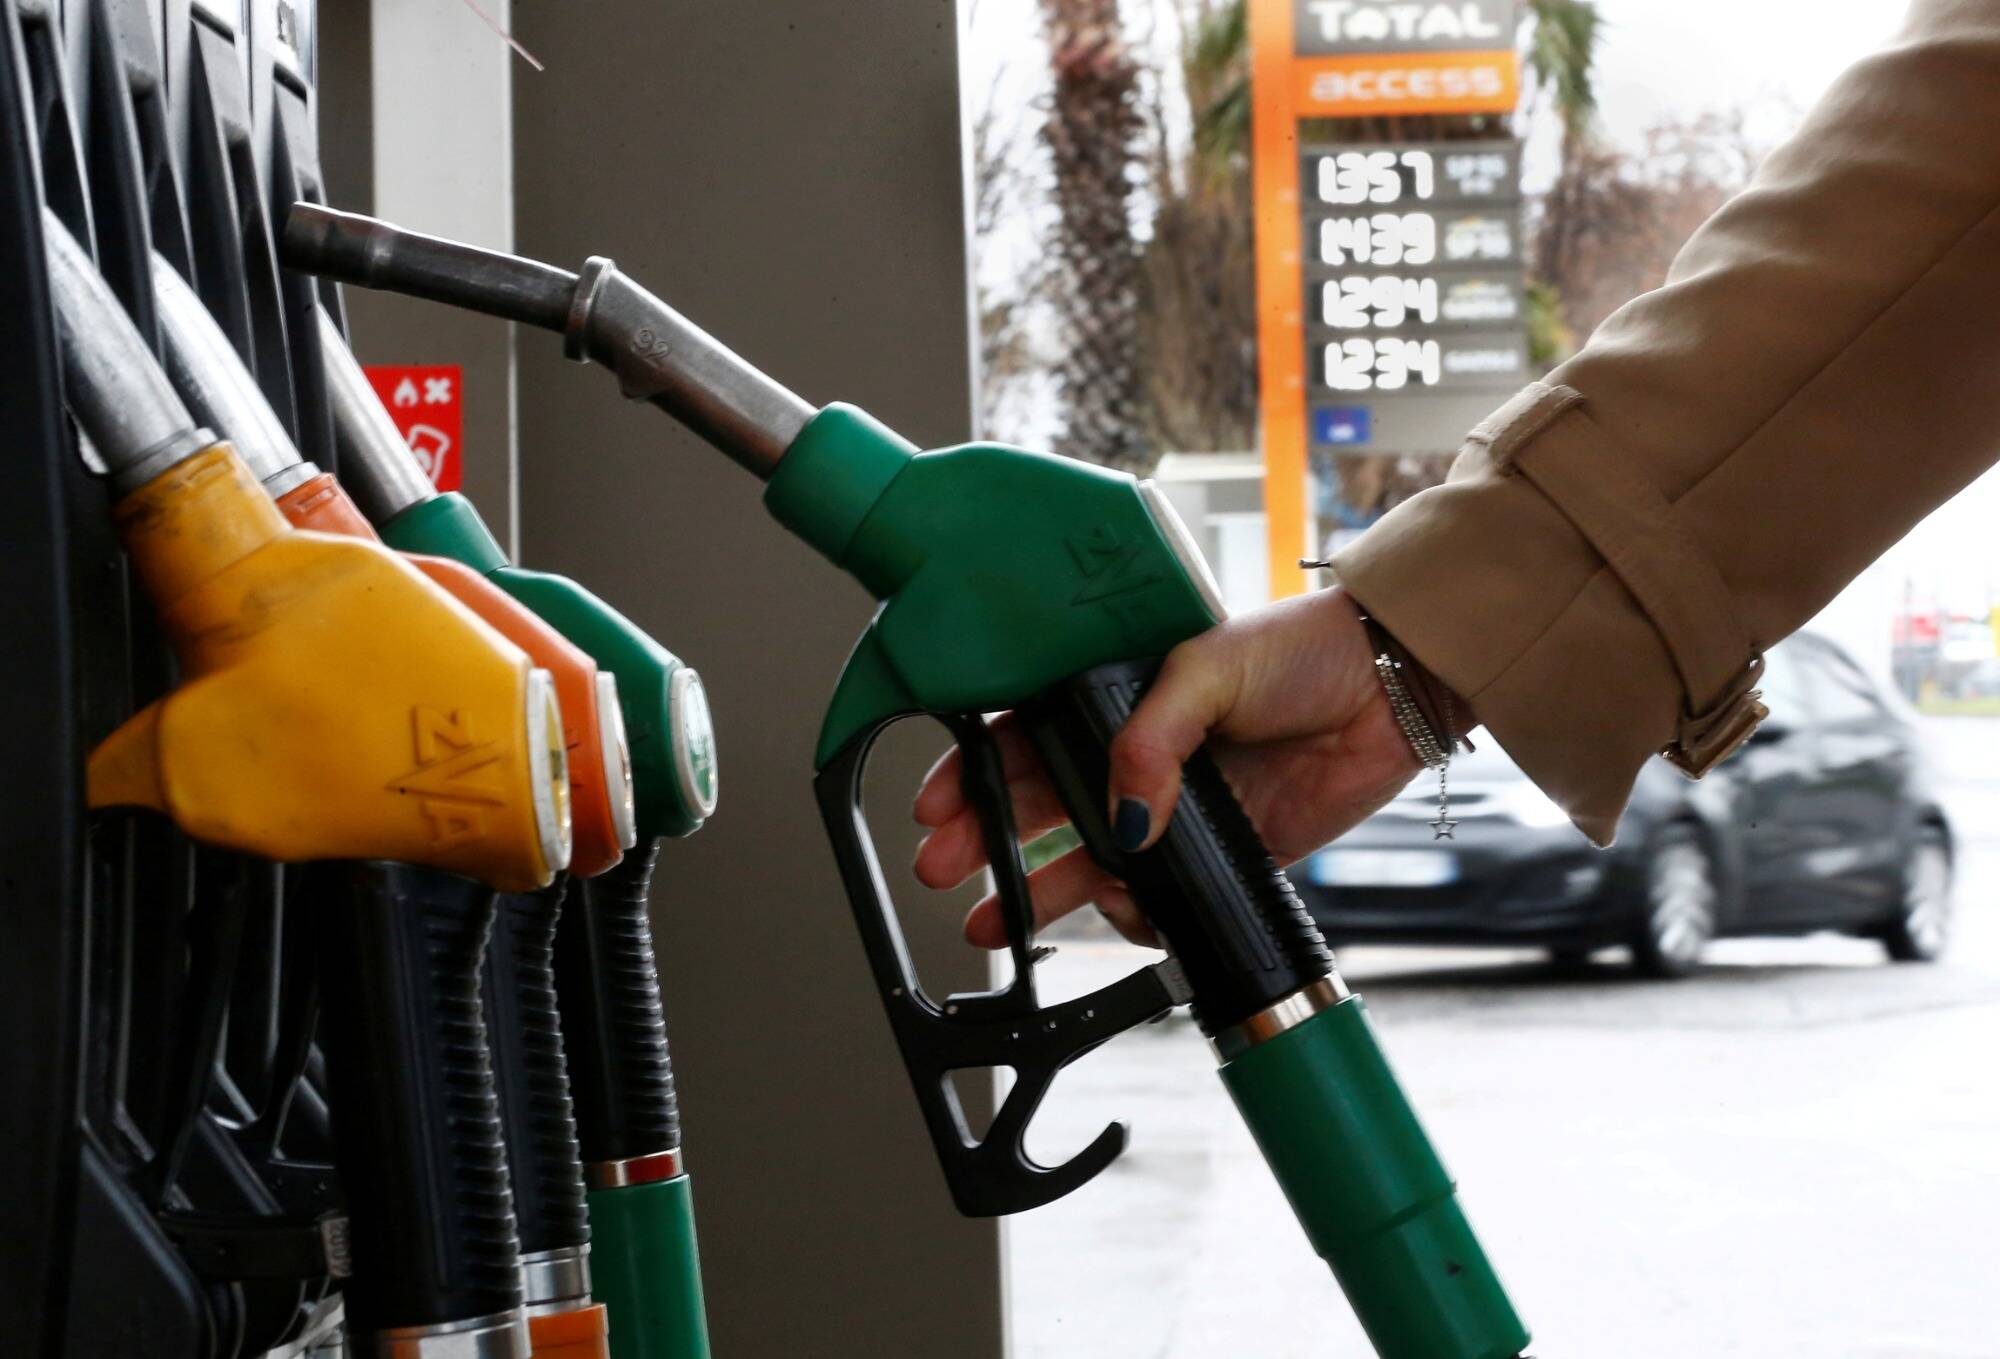 Uw voertuig ombouwen naar bio-ethanol om brandstof te besparen?  3 vragen om alles te begrijpen